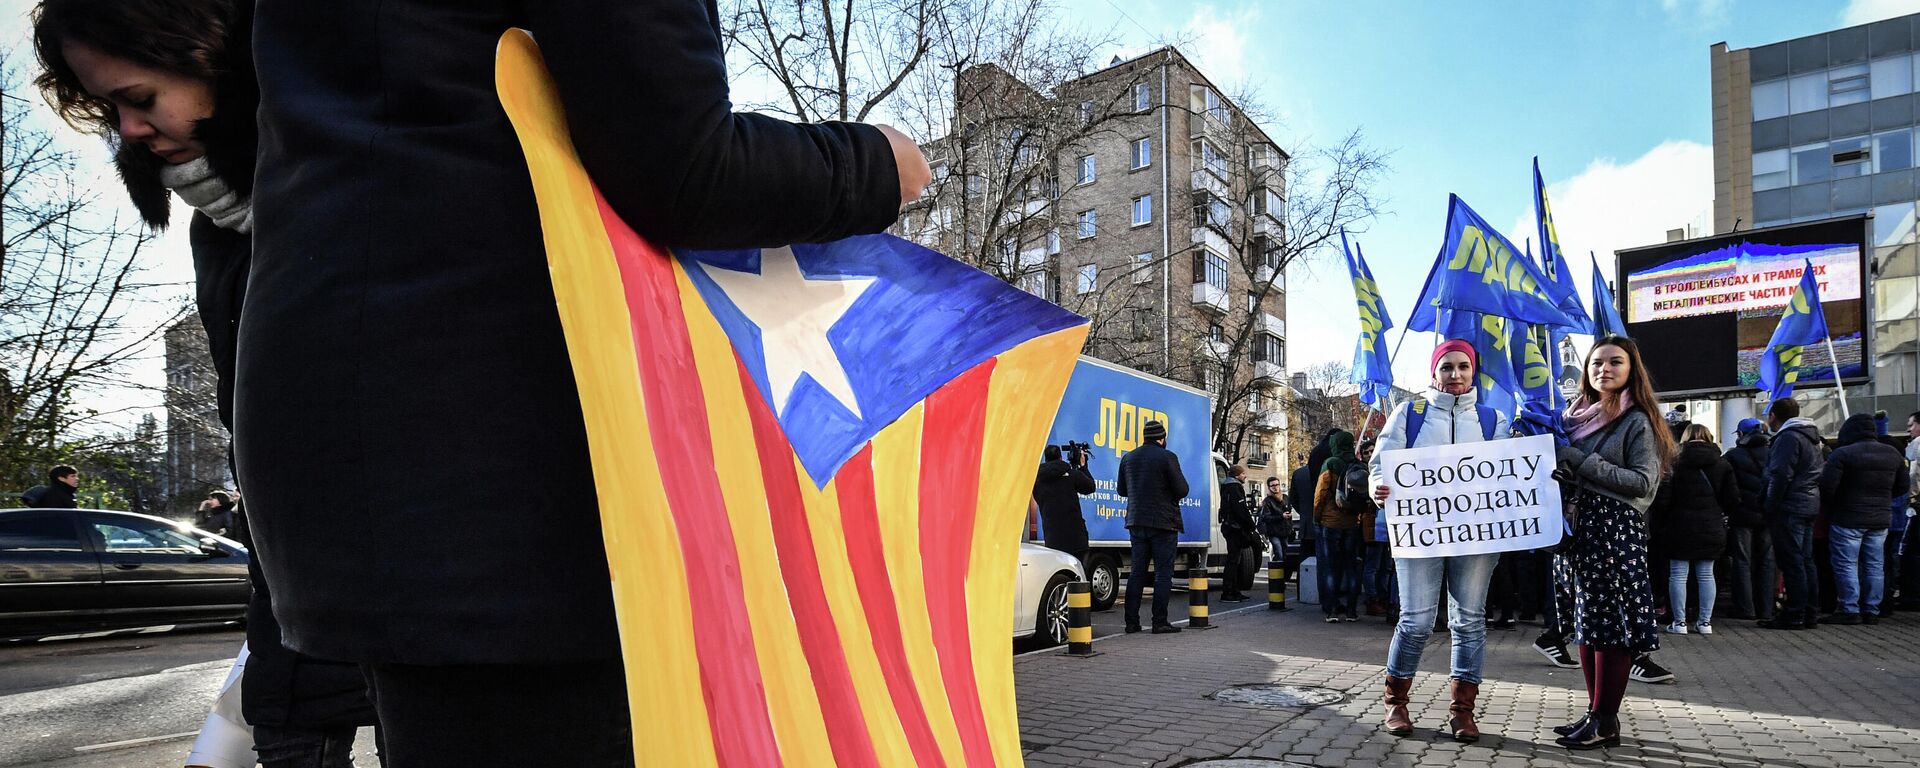 Un simpatizante del Partido Liberal Democrático de Rusia (LDPR) sostiene una bandera catalana independentista - Sputnik Mundo, 1920, 17.05.2021